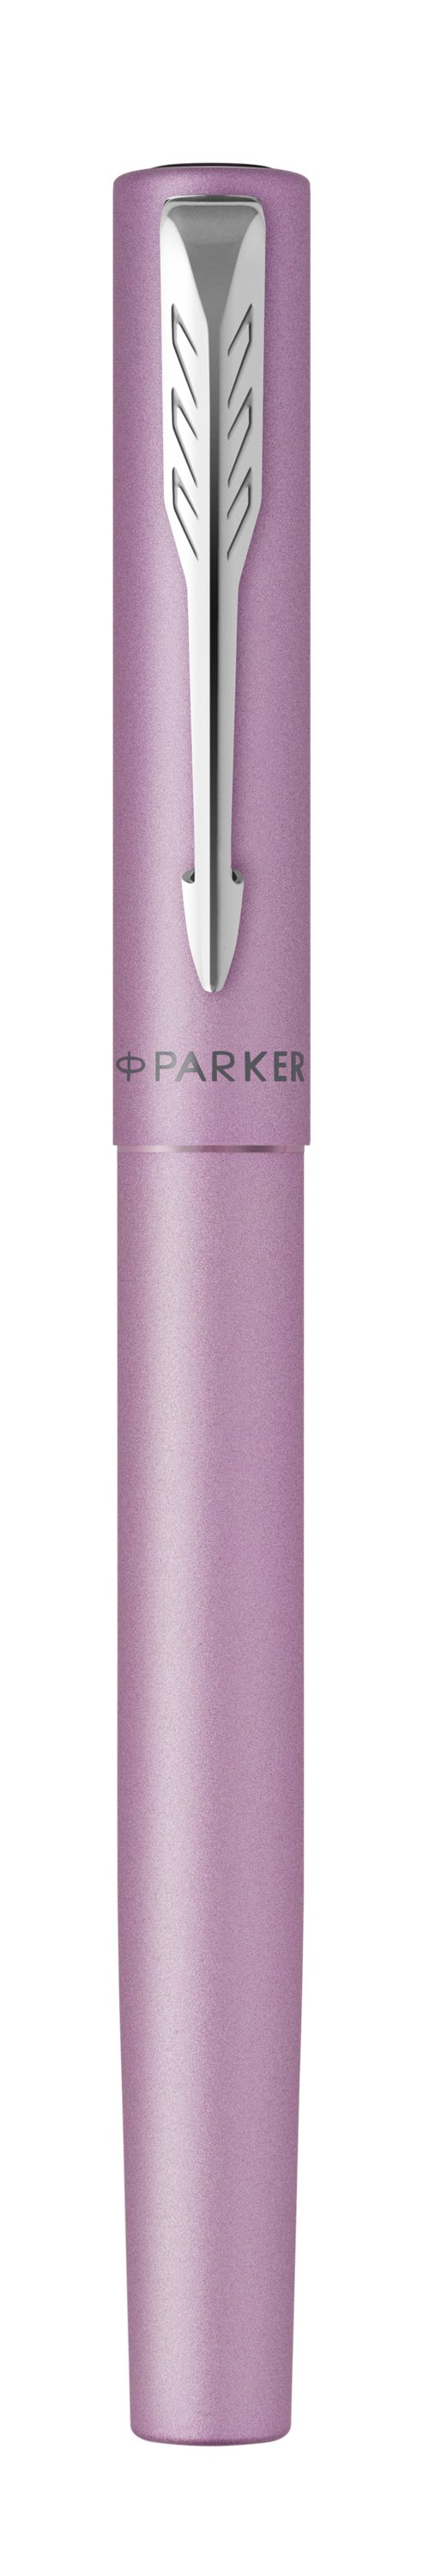 Parker | Vector XL Metallic Lilac C.C. Füllfederhalter | Federbreite M | Schreibfarbe Blau | in Geschenkbox